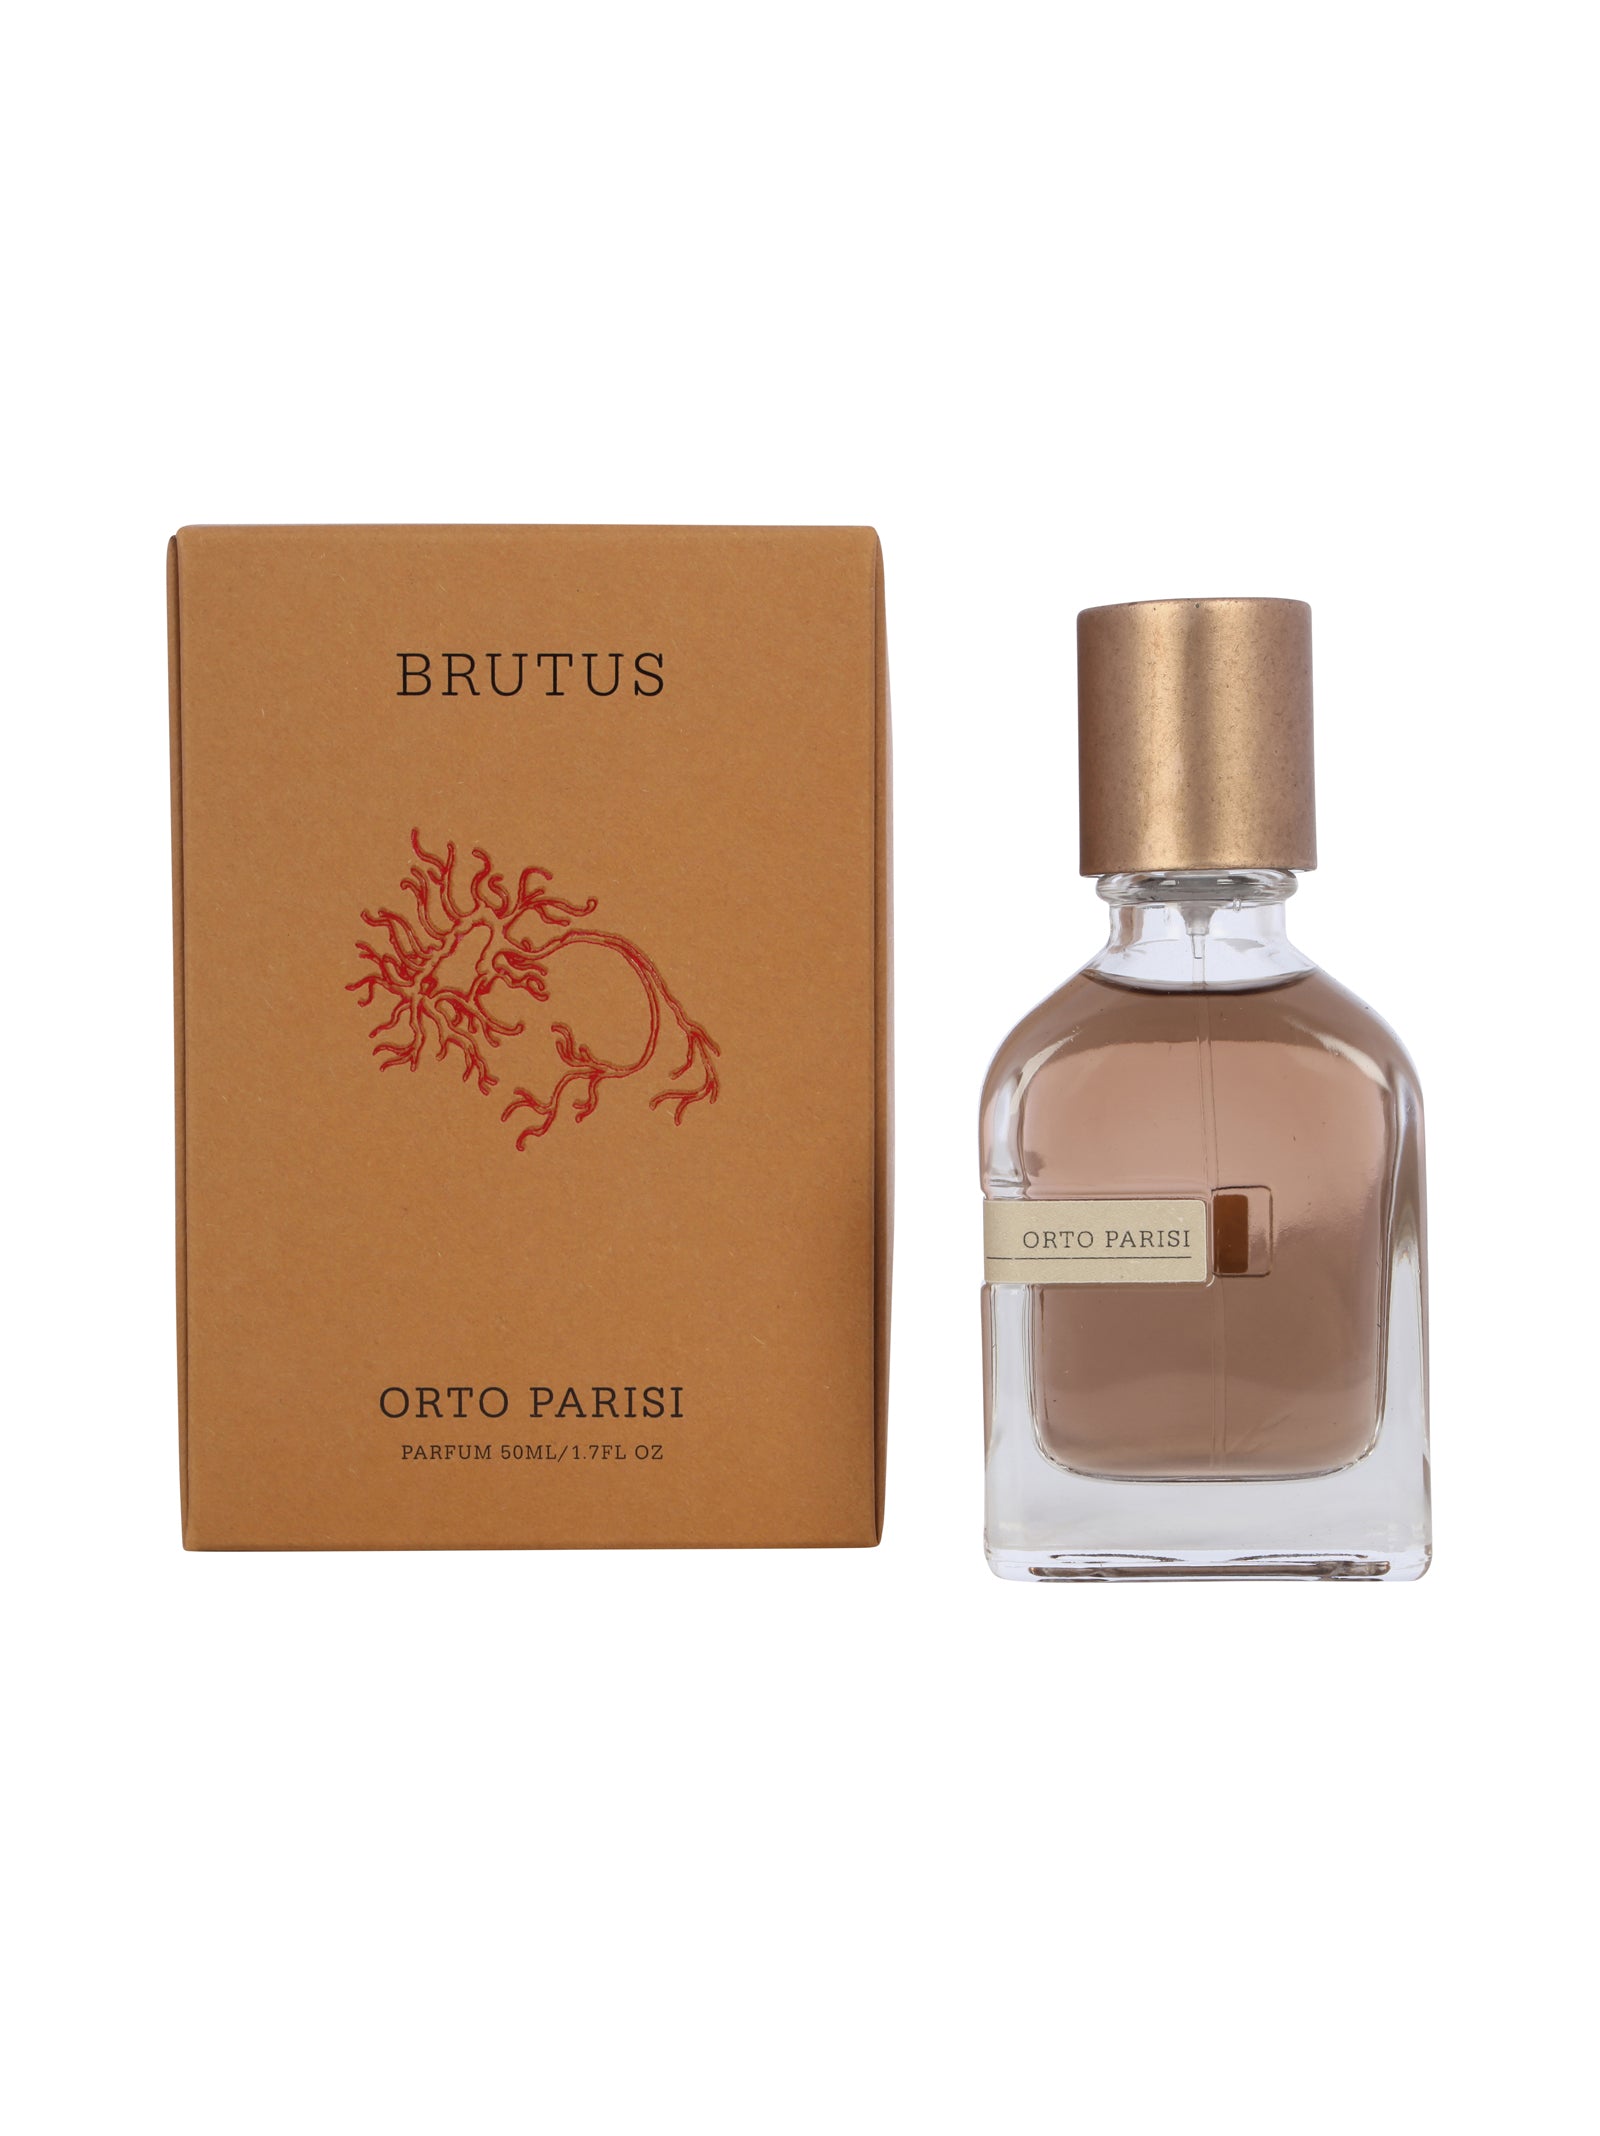 Brutus Parfum 50 ml